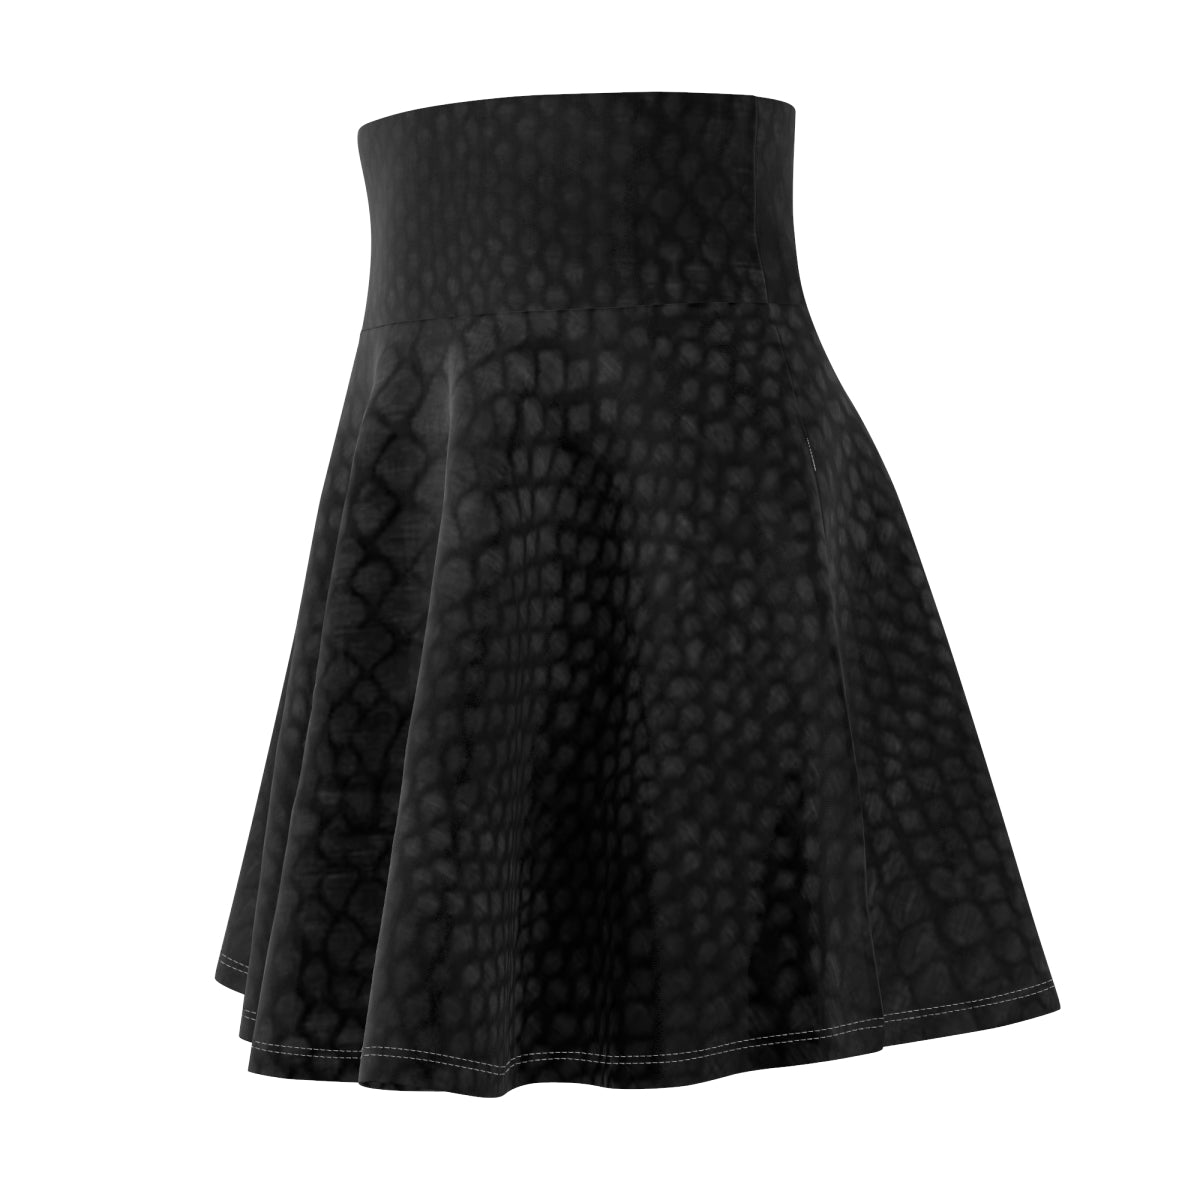 Women's Black Skater Skirt, Circle Hight Waisted Skirt, Gothic A Line Full Skirt,